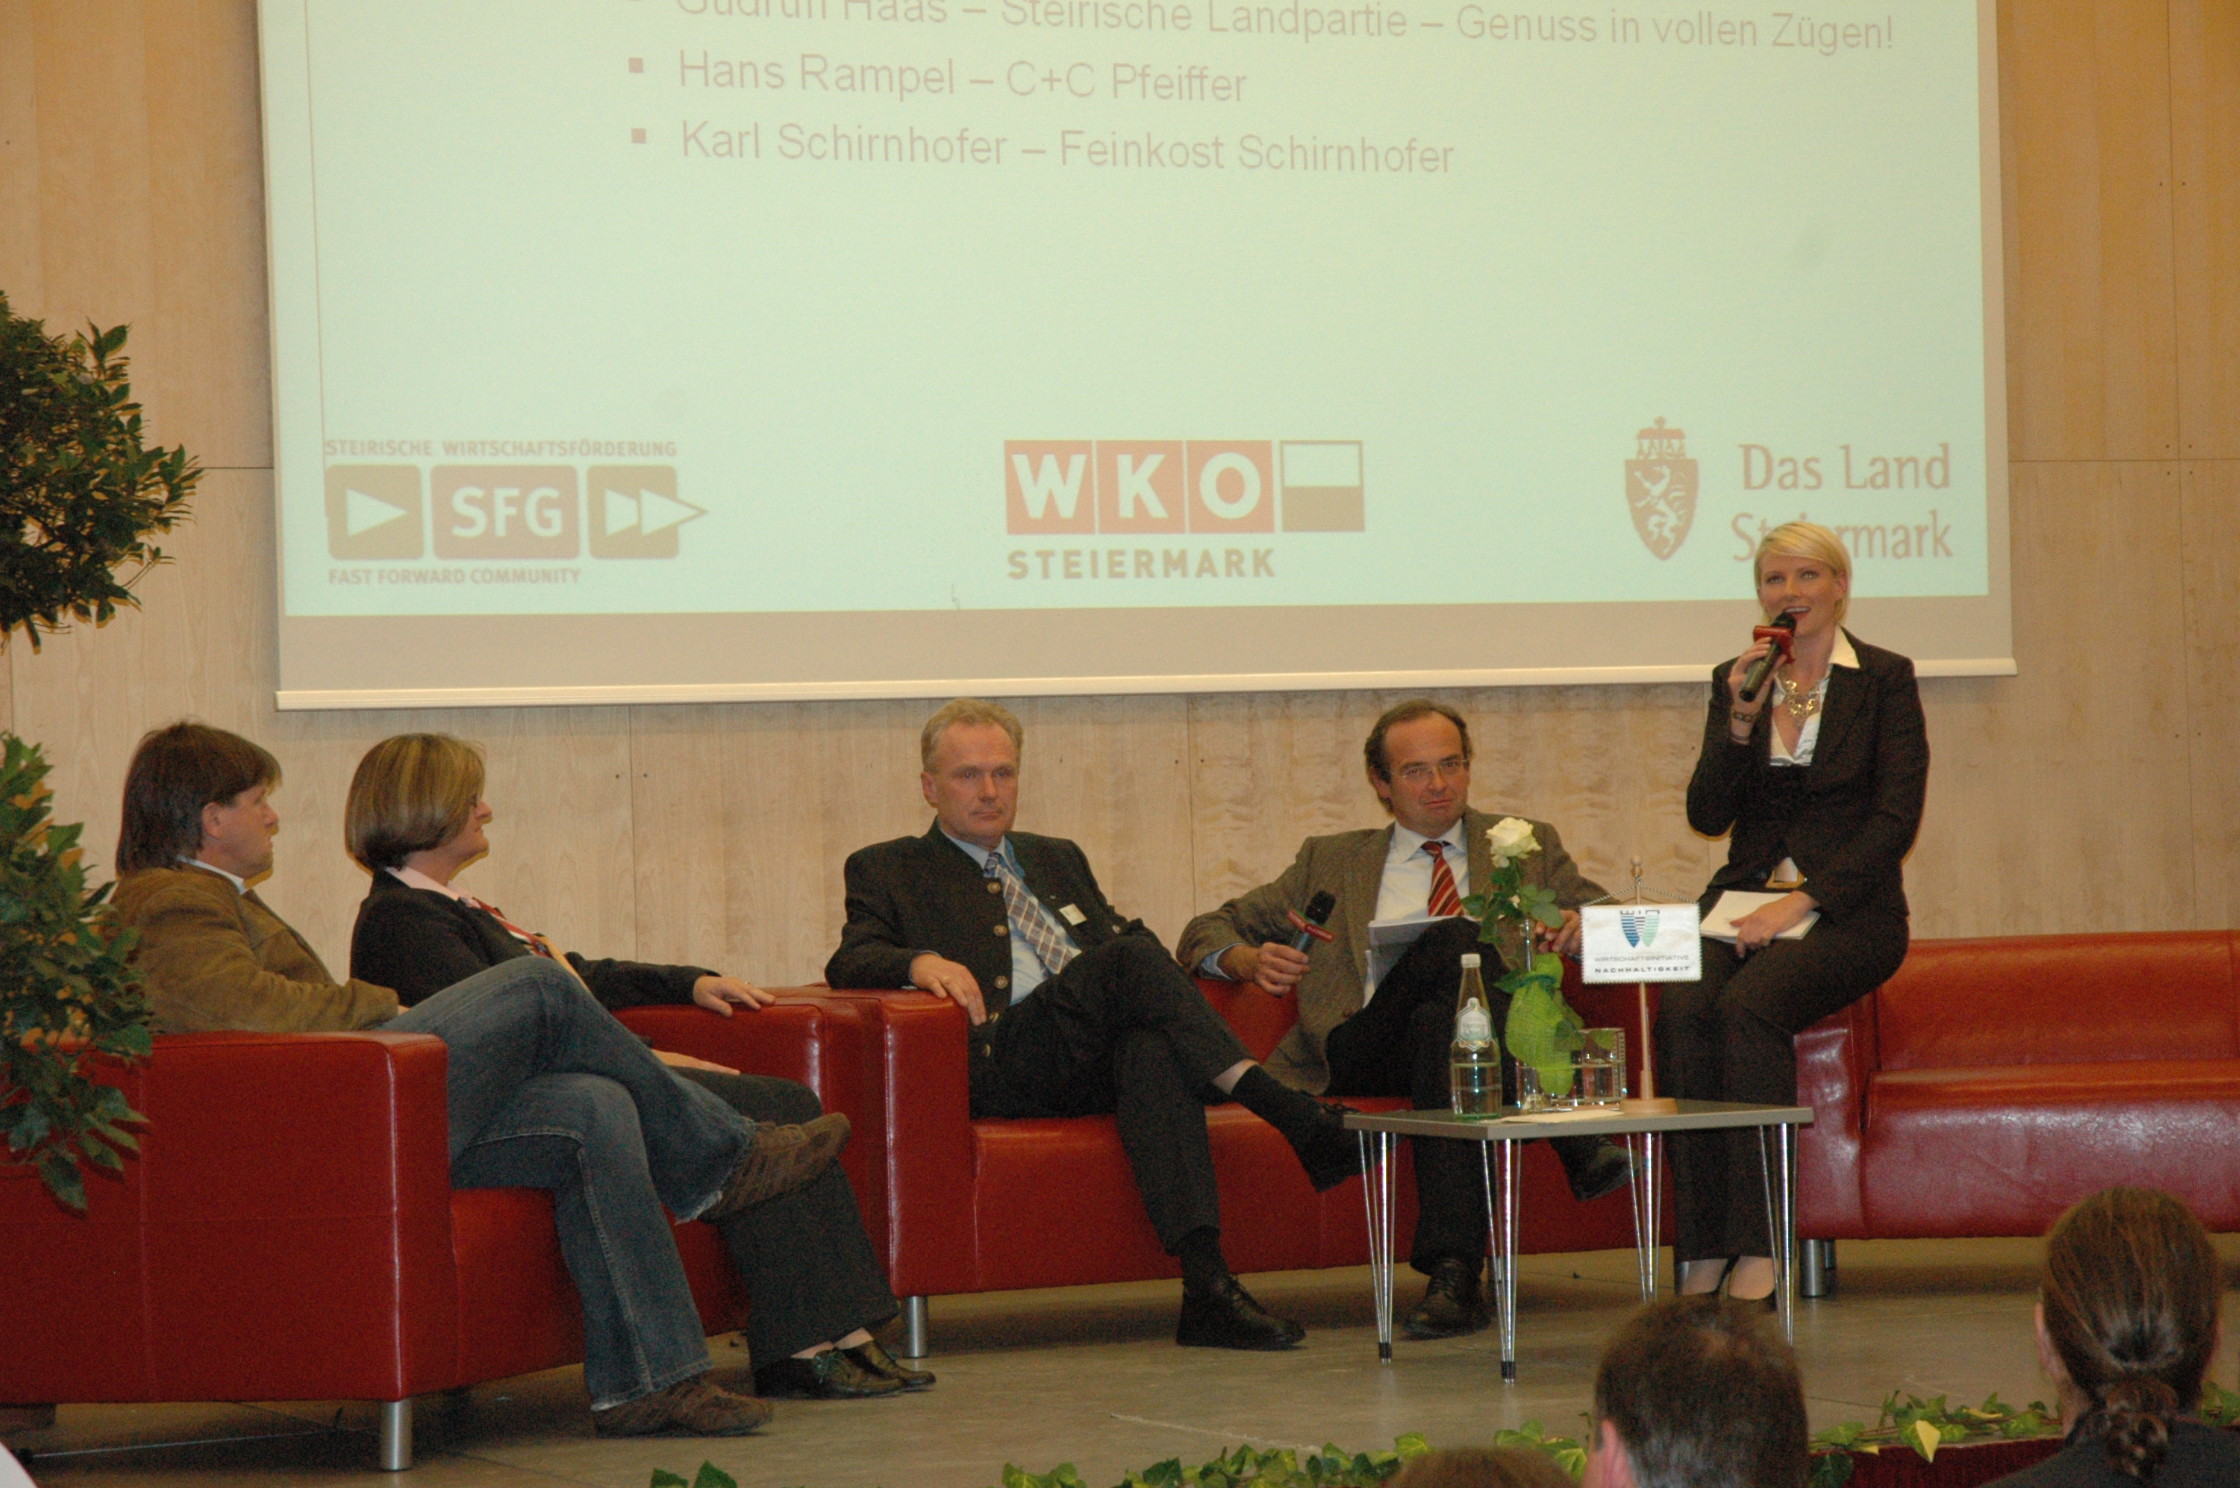 Statements (von links nach rechts): Karl Schirnhofer, Gudrun Haas, Hans Rampelt, GF Georg Bliem